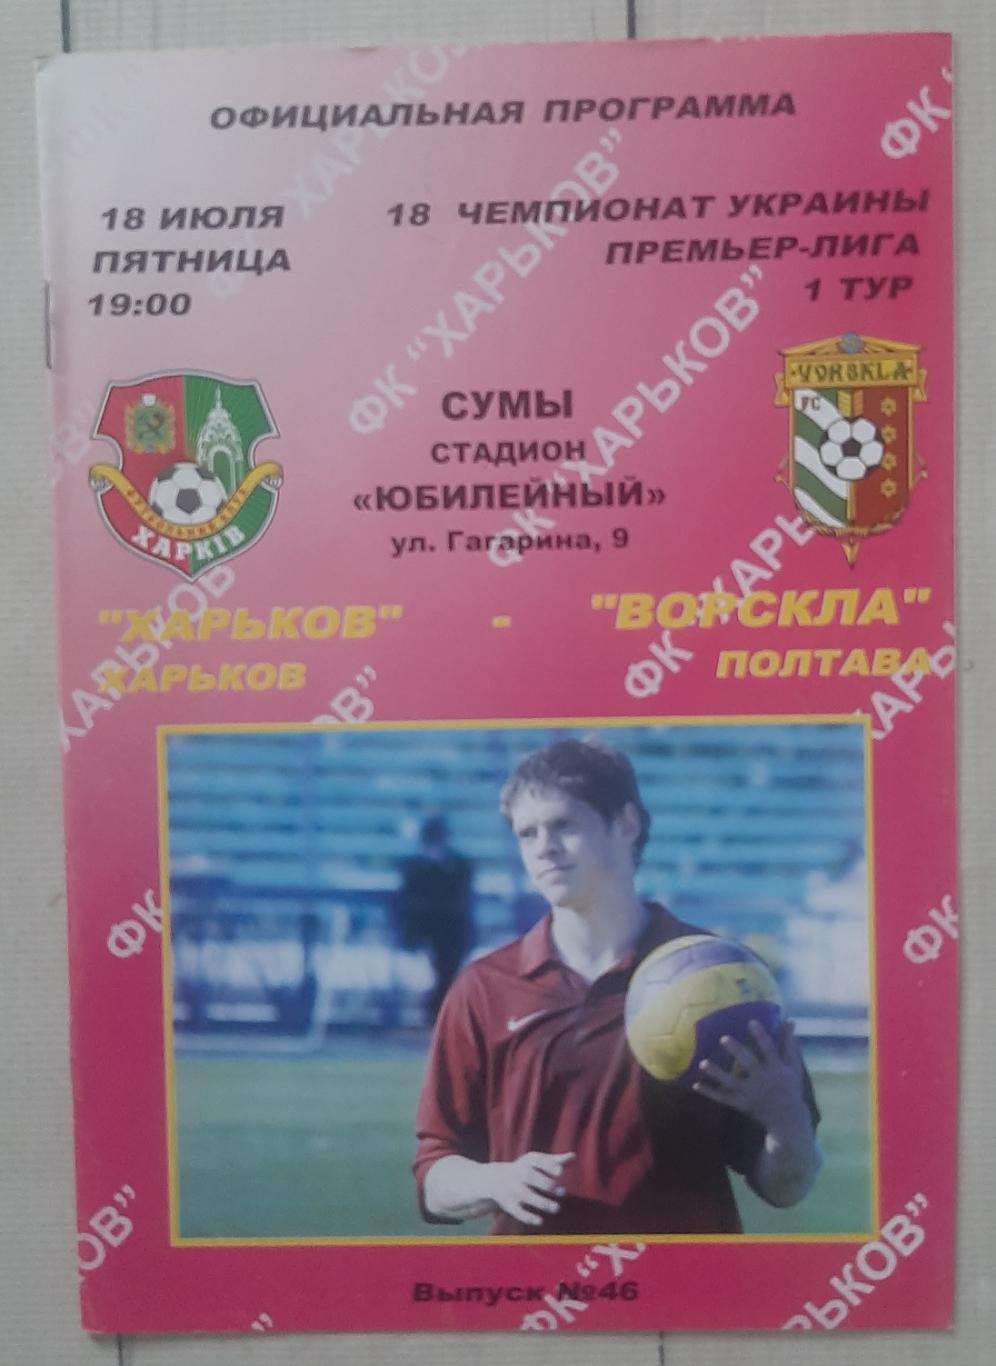 ФК Харків - Ворскла Полтава 18.07.2008.